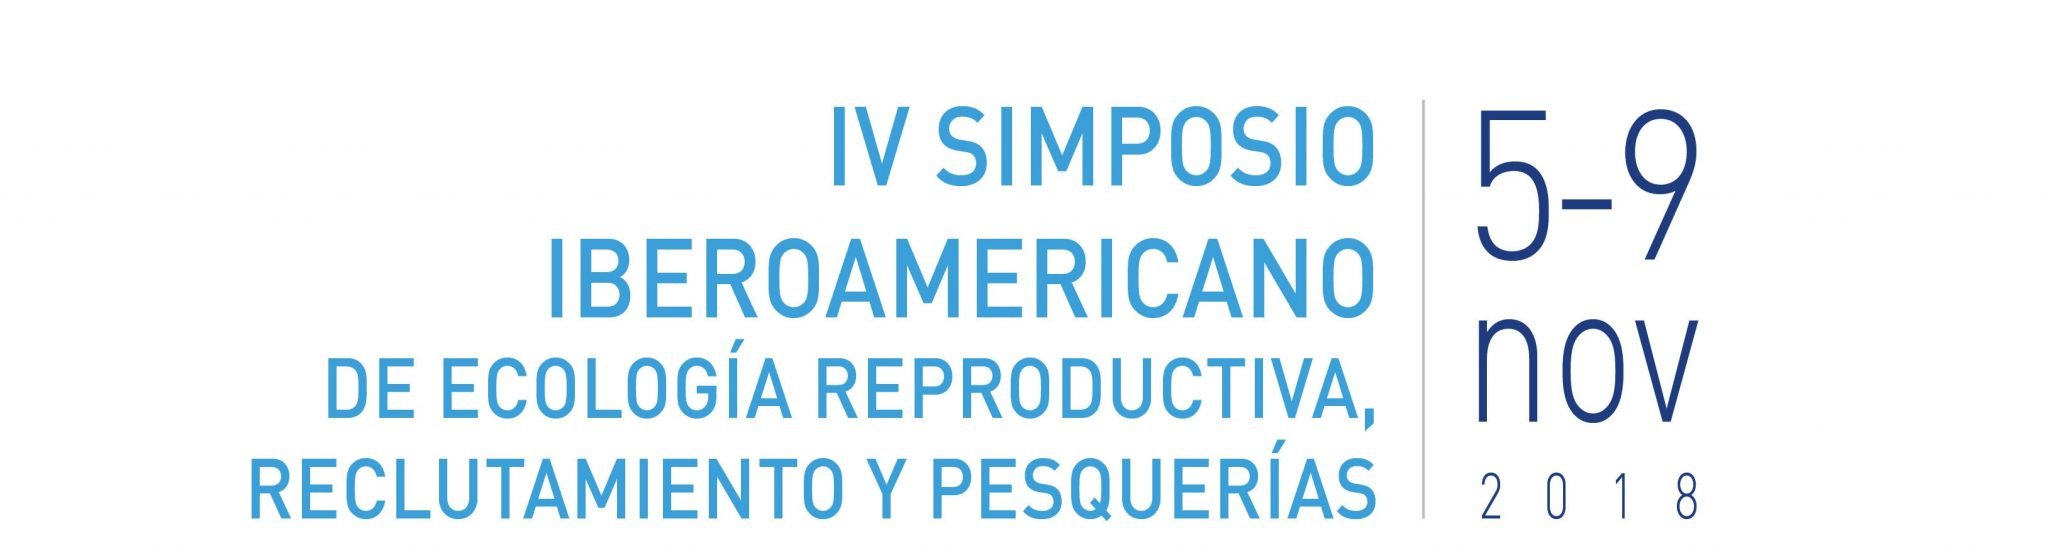 IFOP y Universidad Arturo Prat organizan Simposio Iberoamericano de Ecología Reproductiva, Reclutamiento y Pesquerías